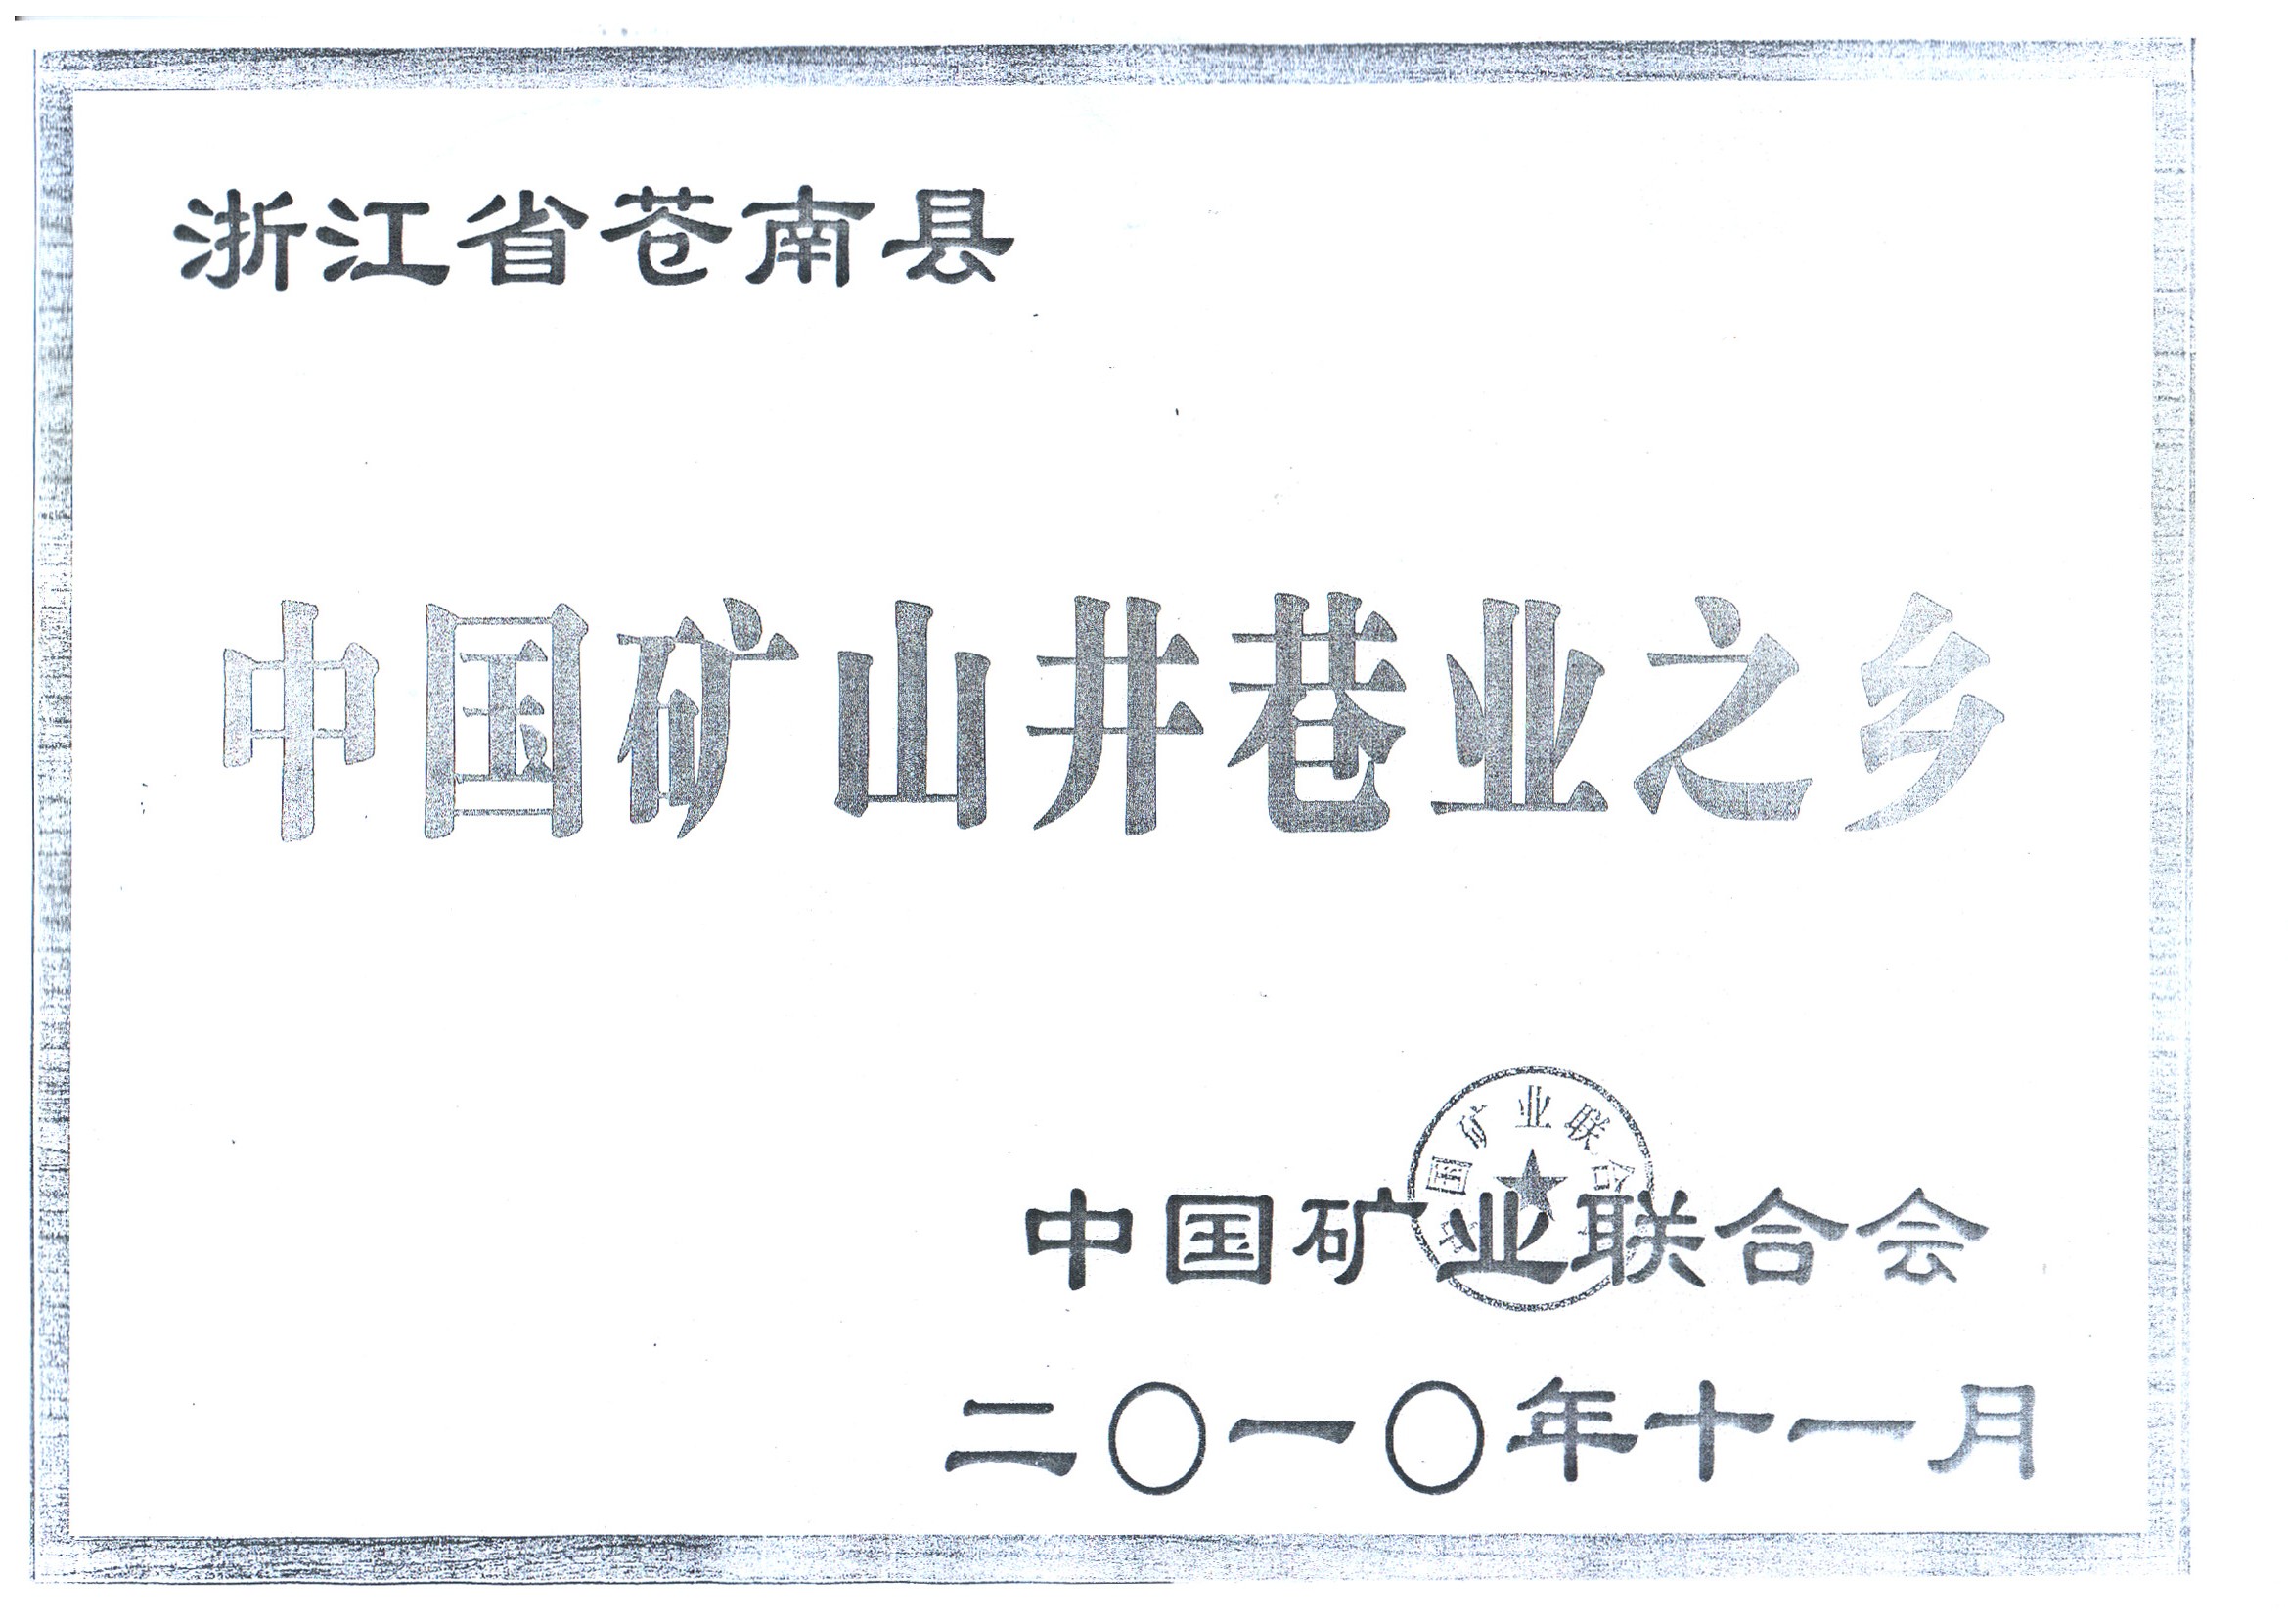 2010年11月中国矿山井巷业之乡证书